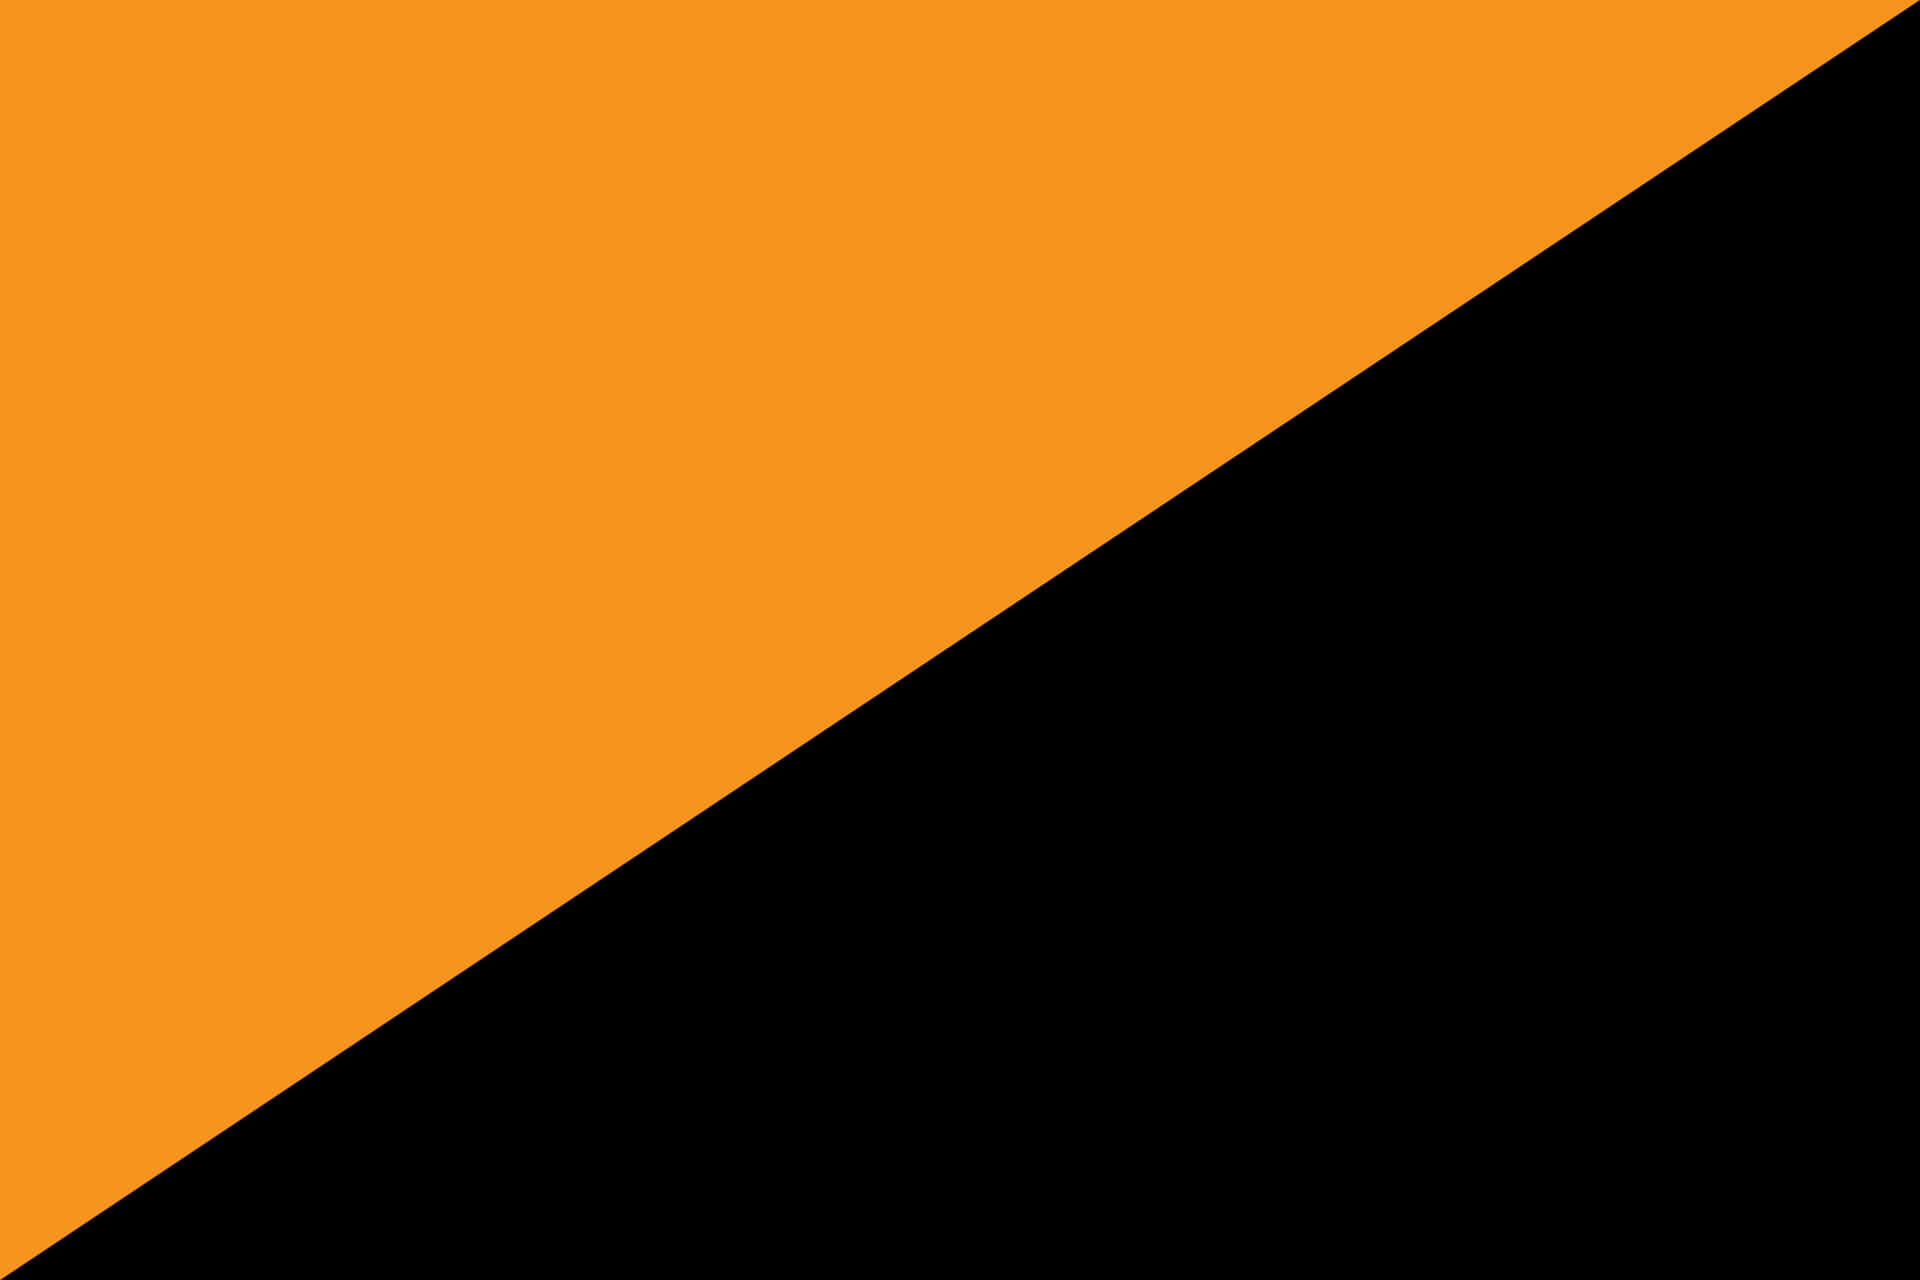 Fondoabstracto Vibrante De Color Negro Y Naranja Fondo de pantalla